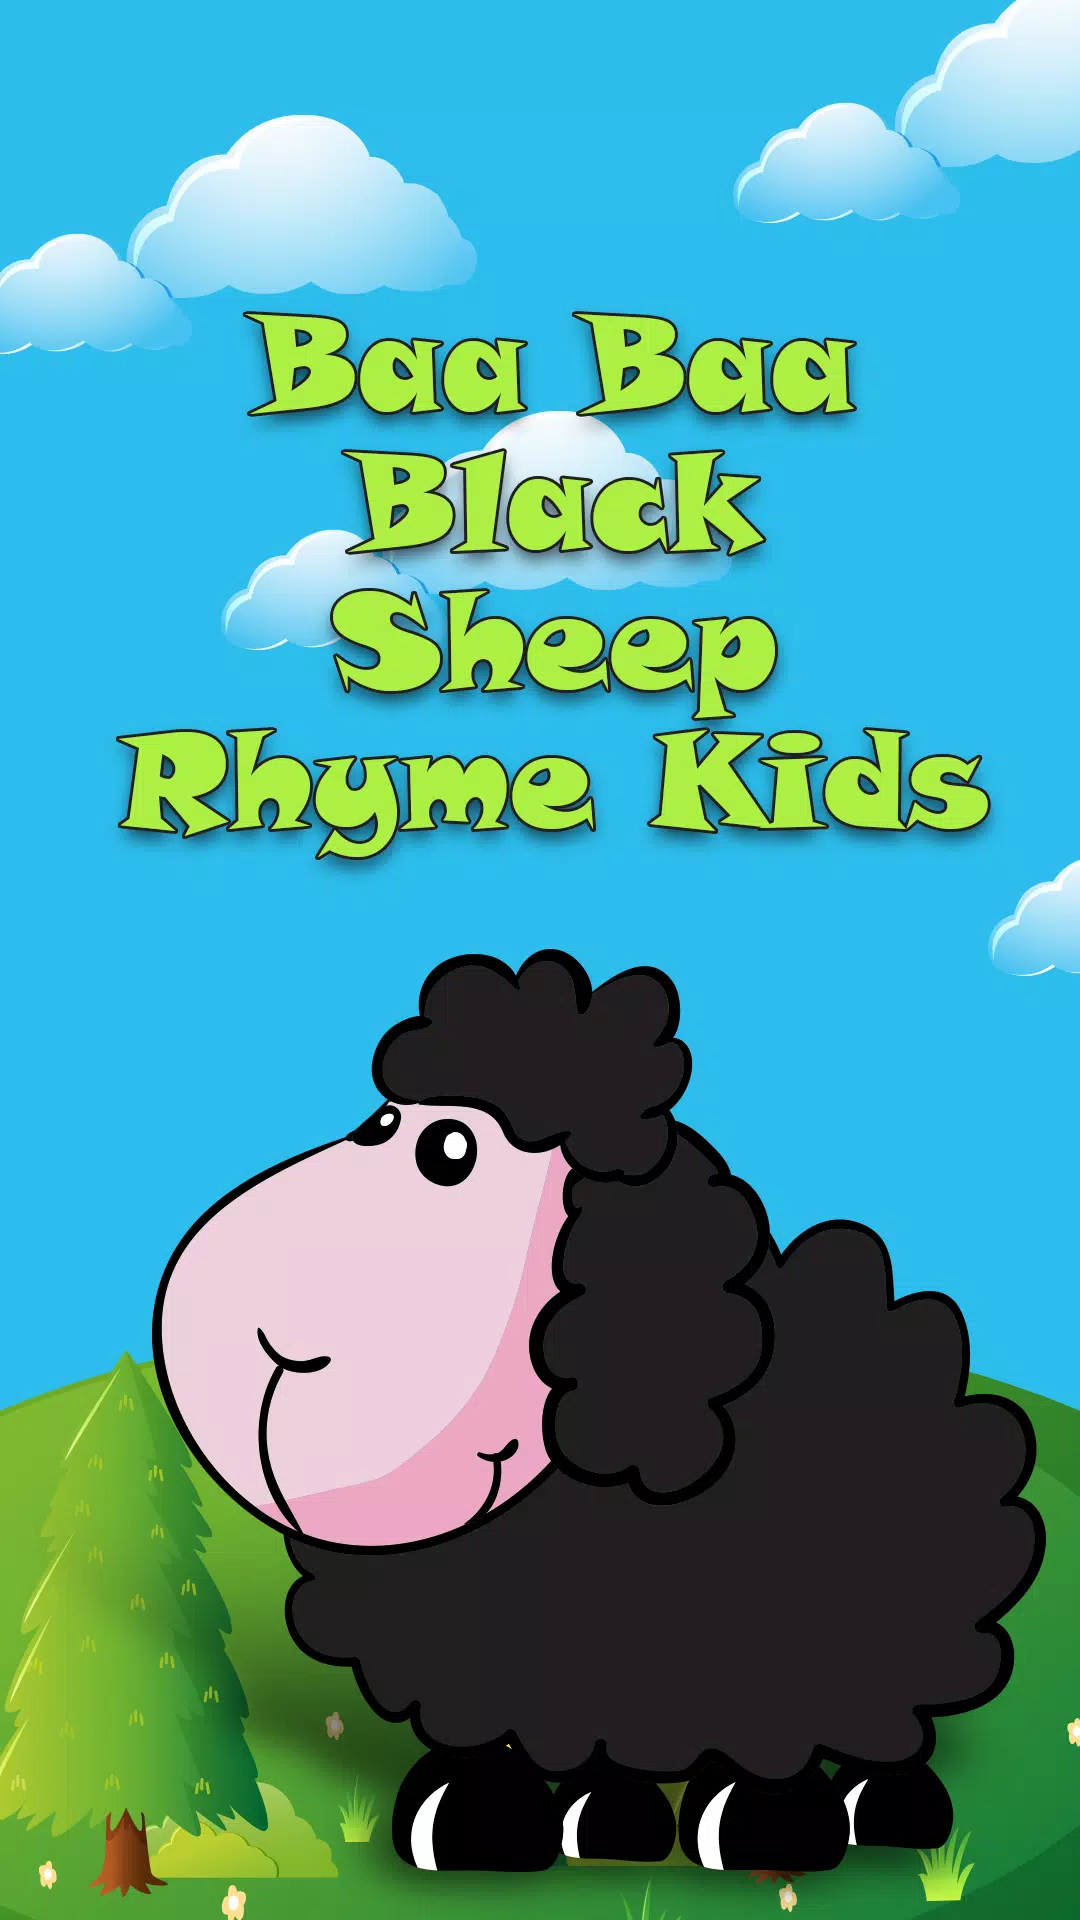 Baa baa black sheep original lyrics